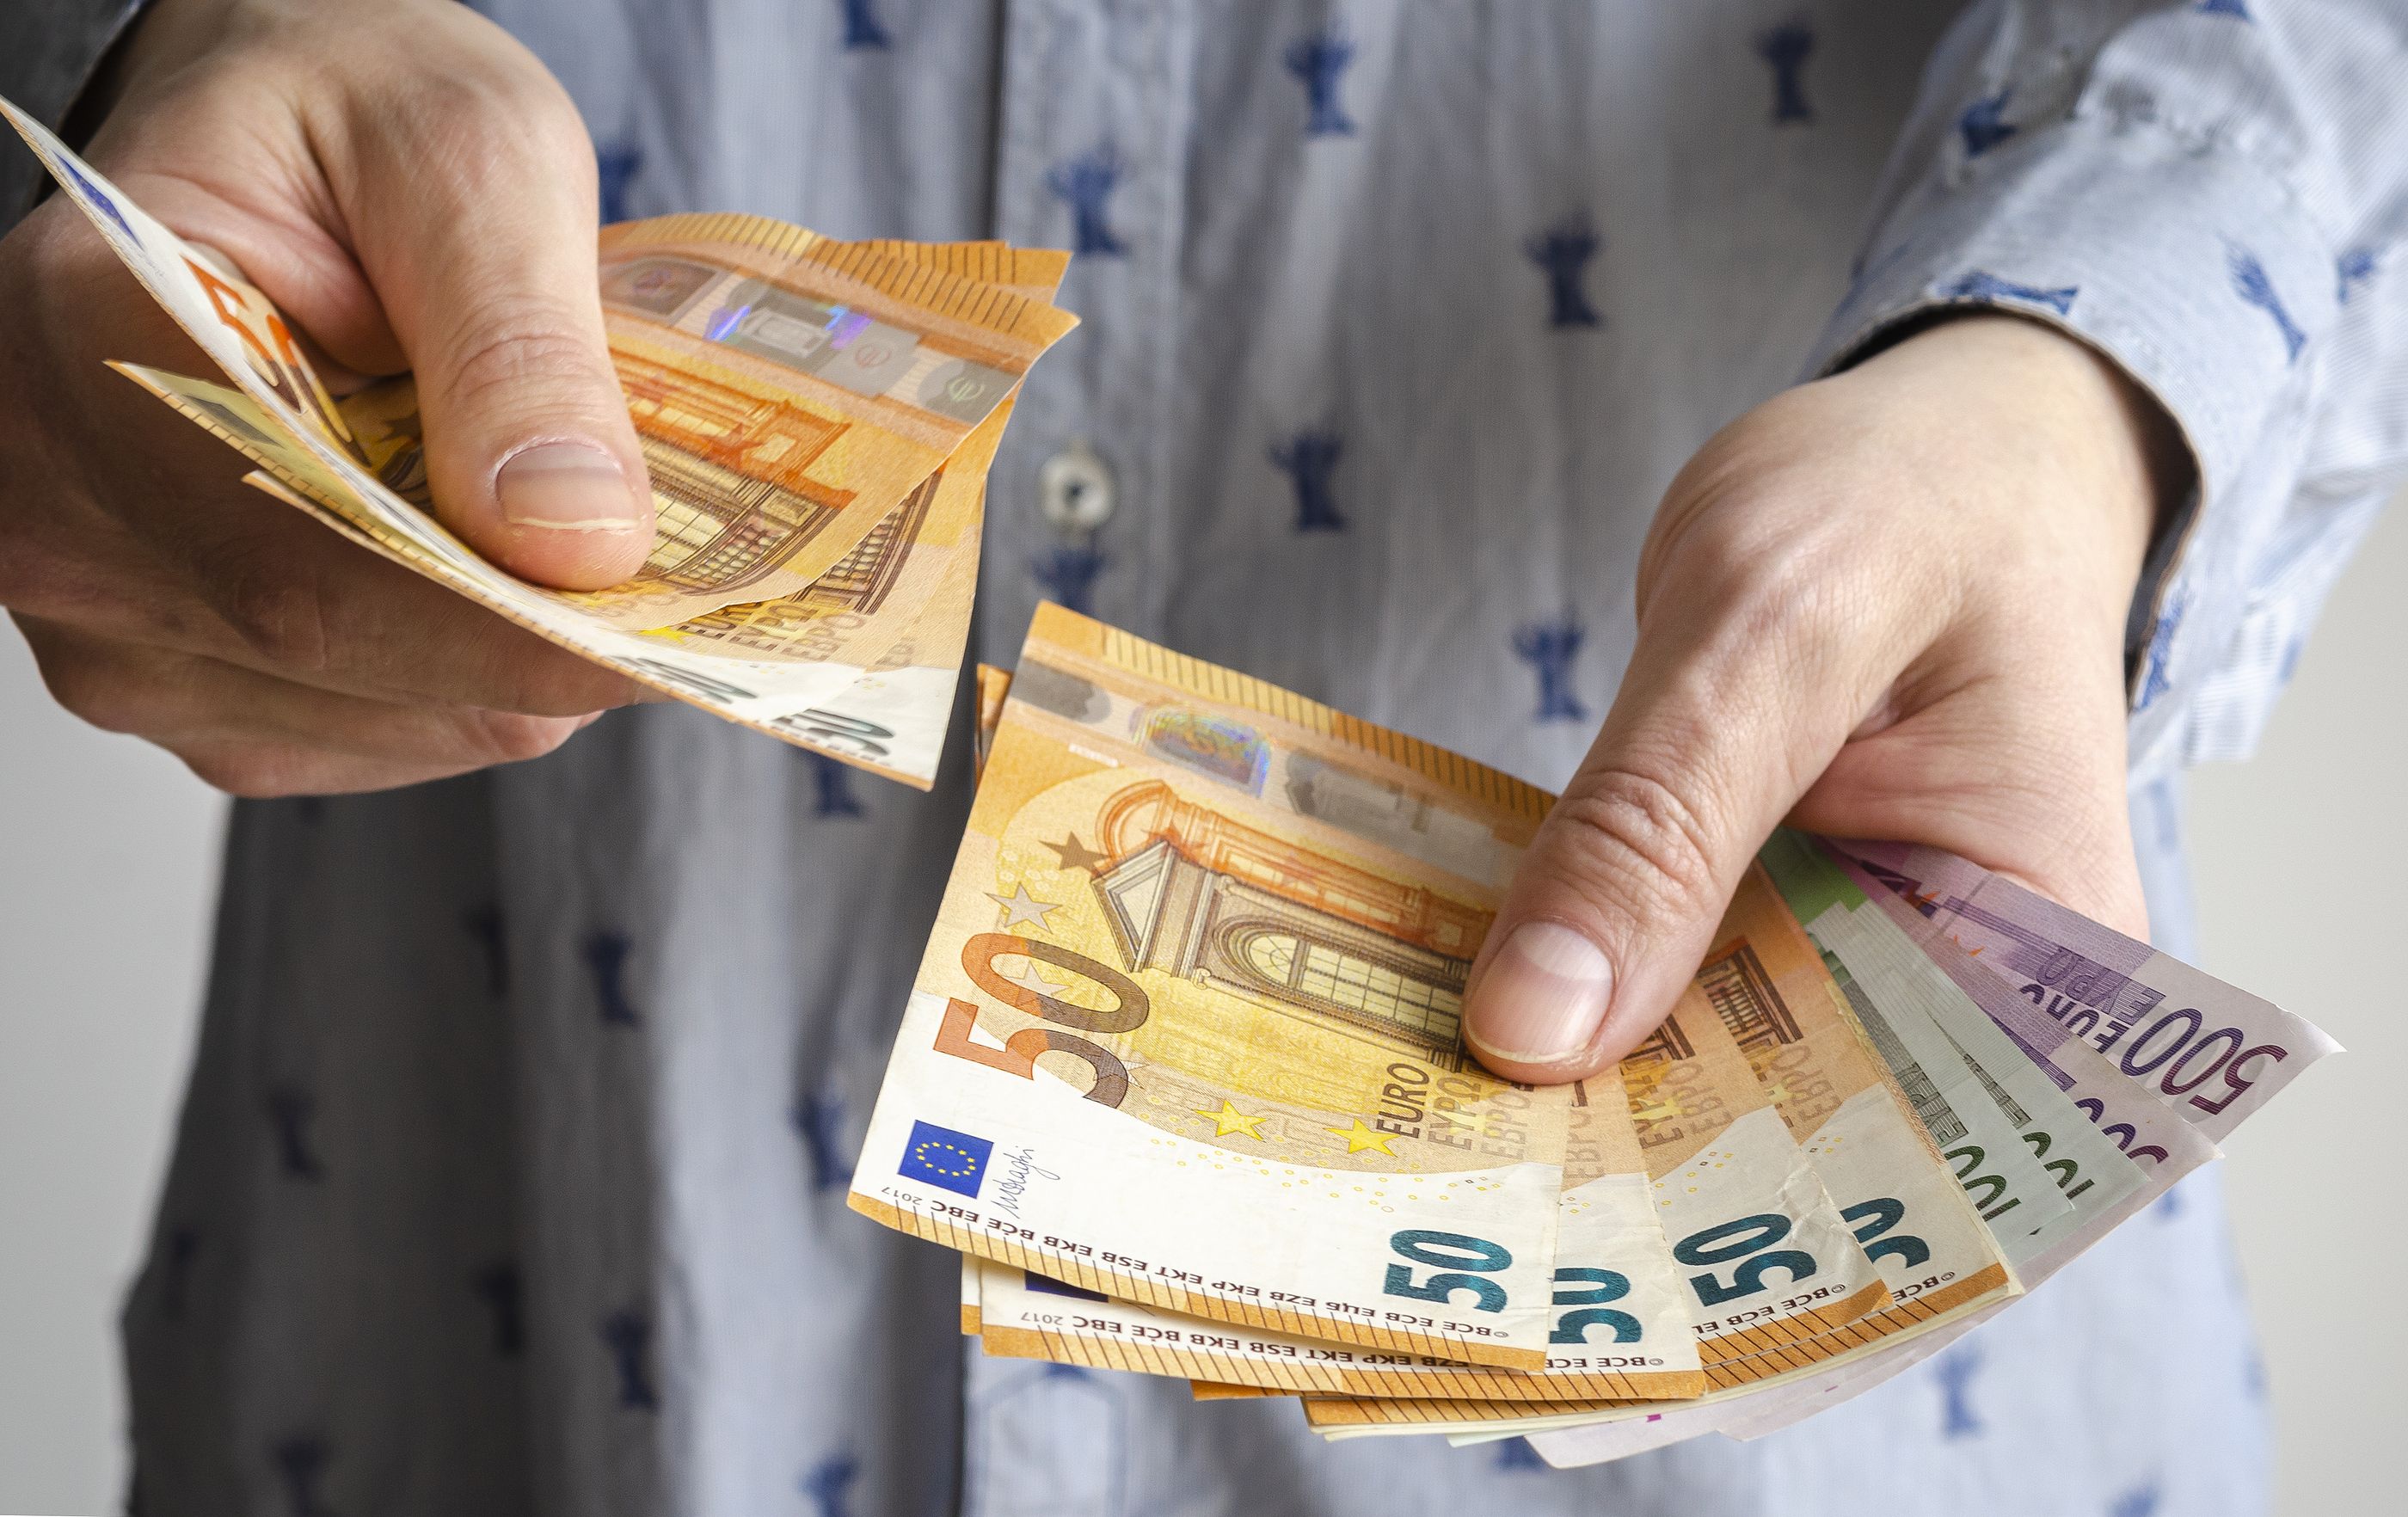 Engaña a su vecino de 79 años, se traslada a su casa a vivir y le roba 22.000 euros